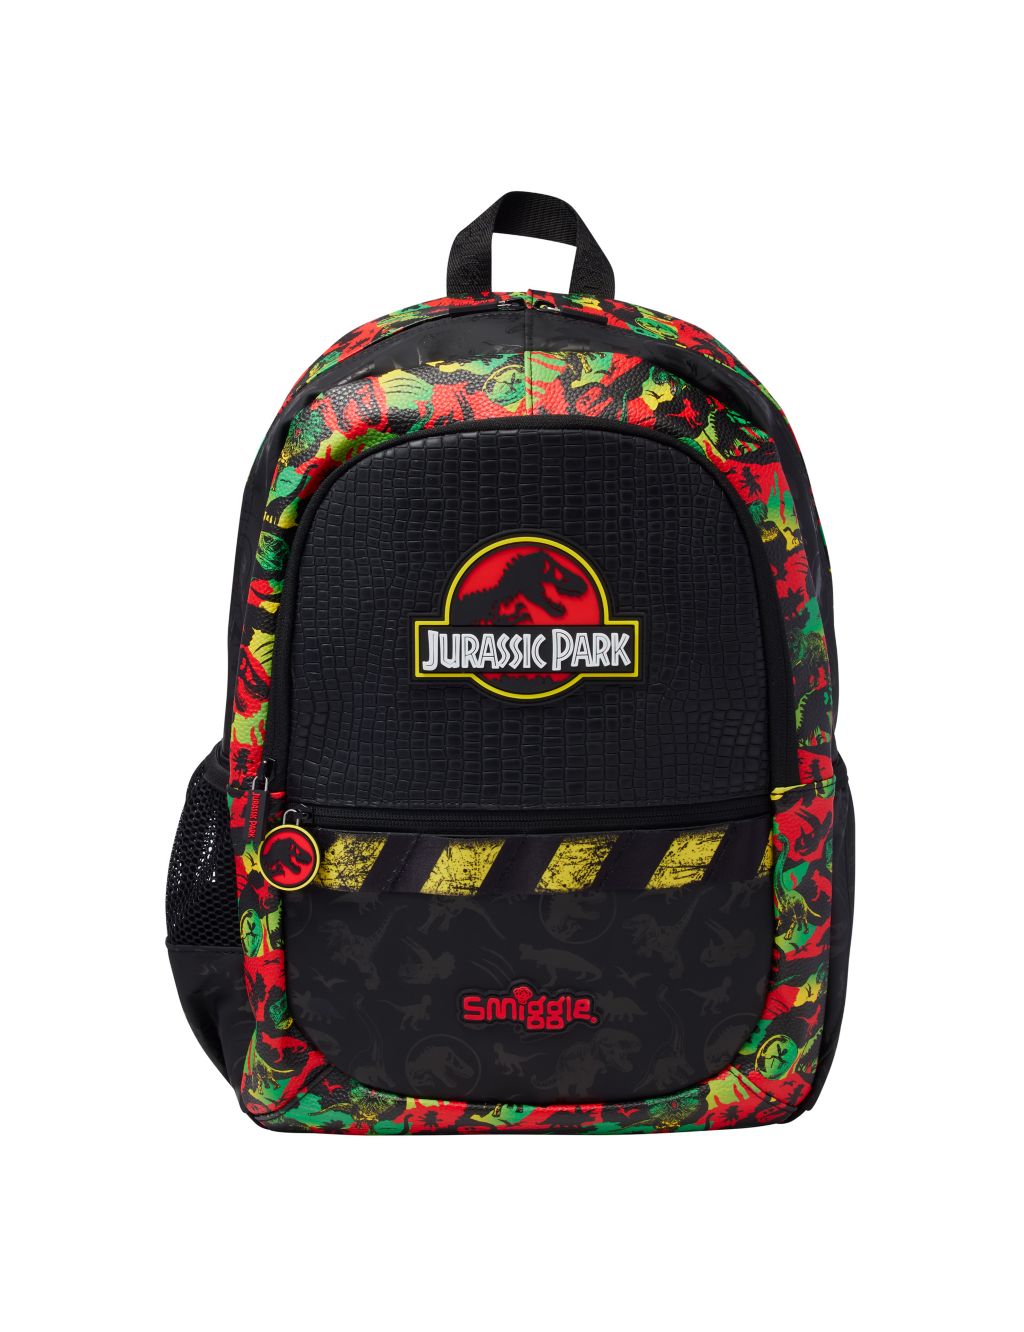 Kids' Jurassic Park Backpack